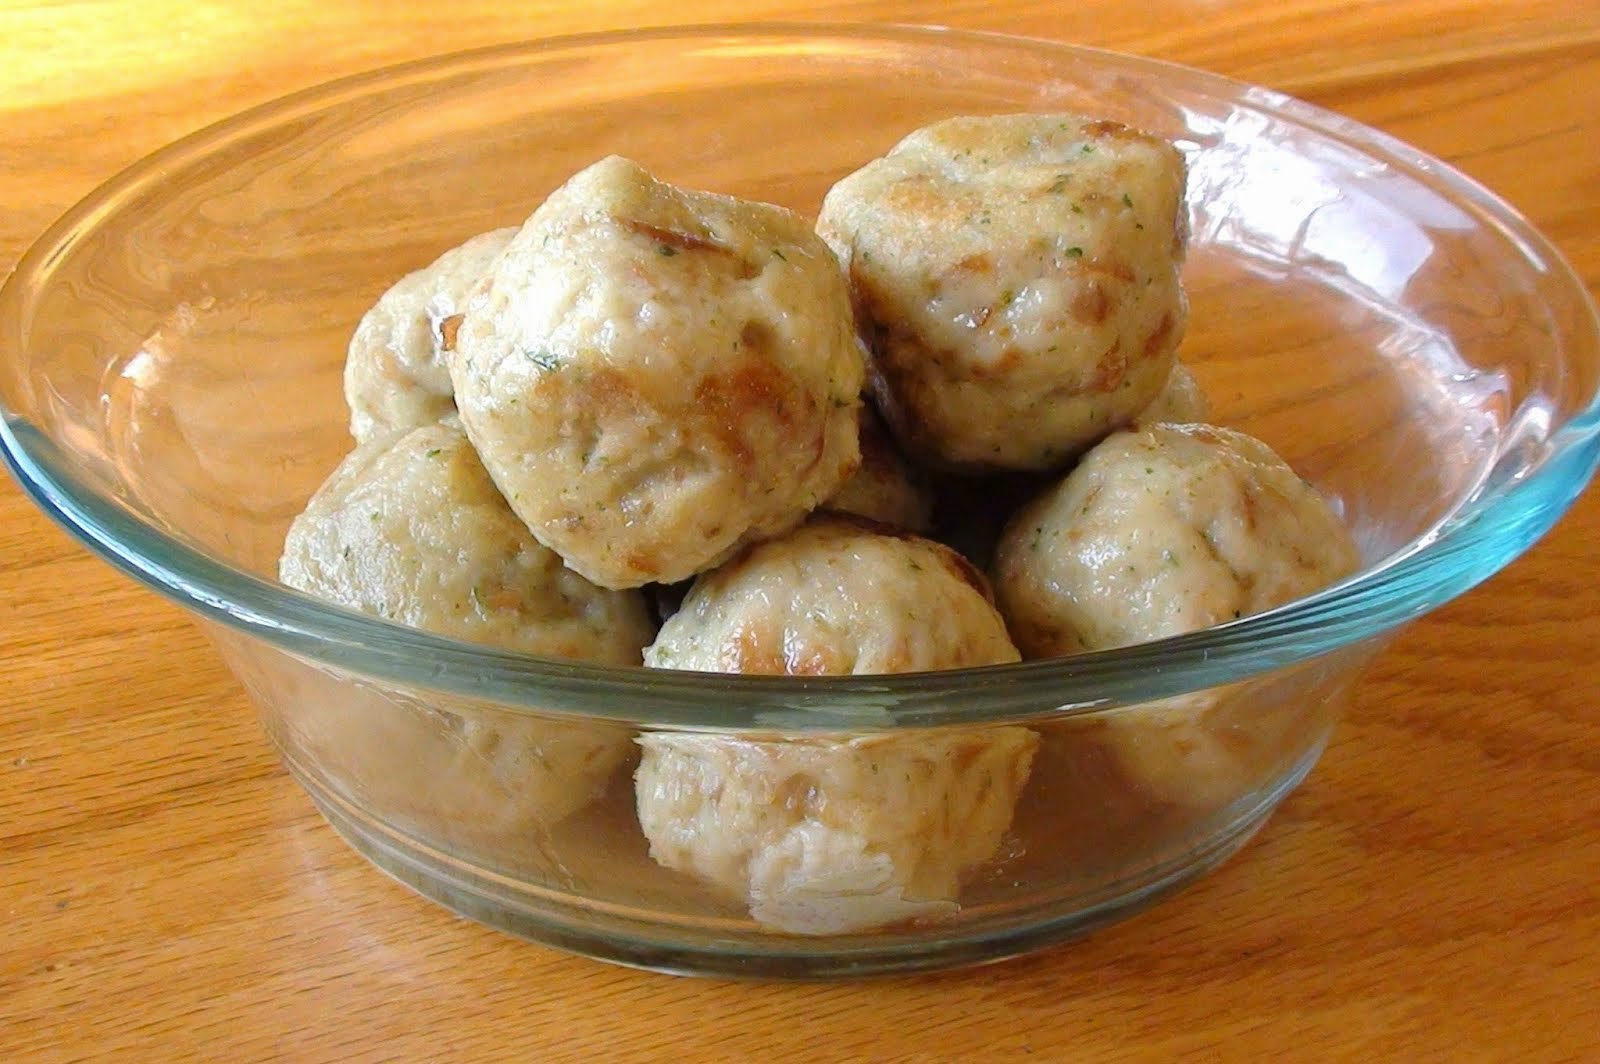 Bread dumplings